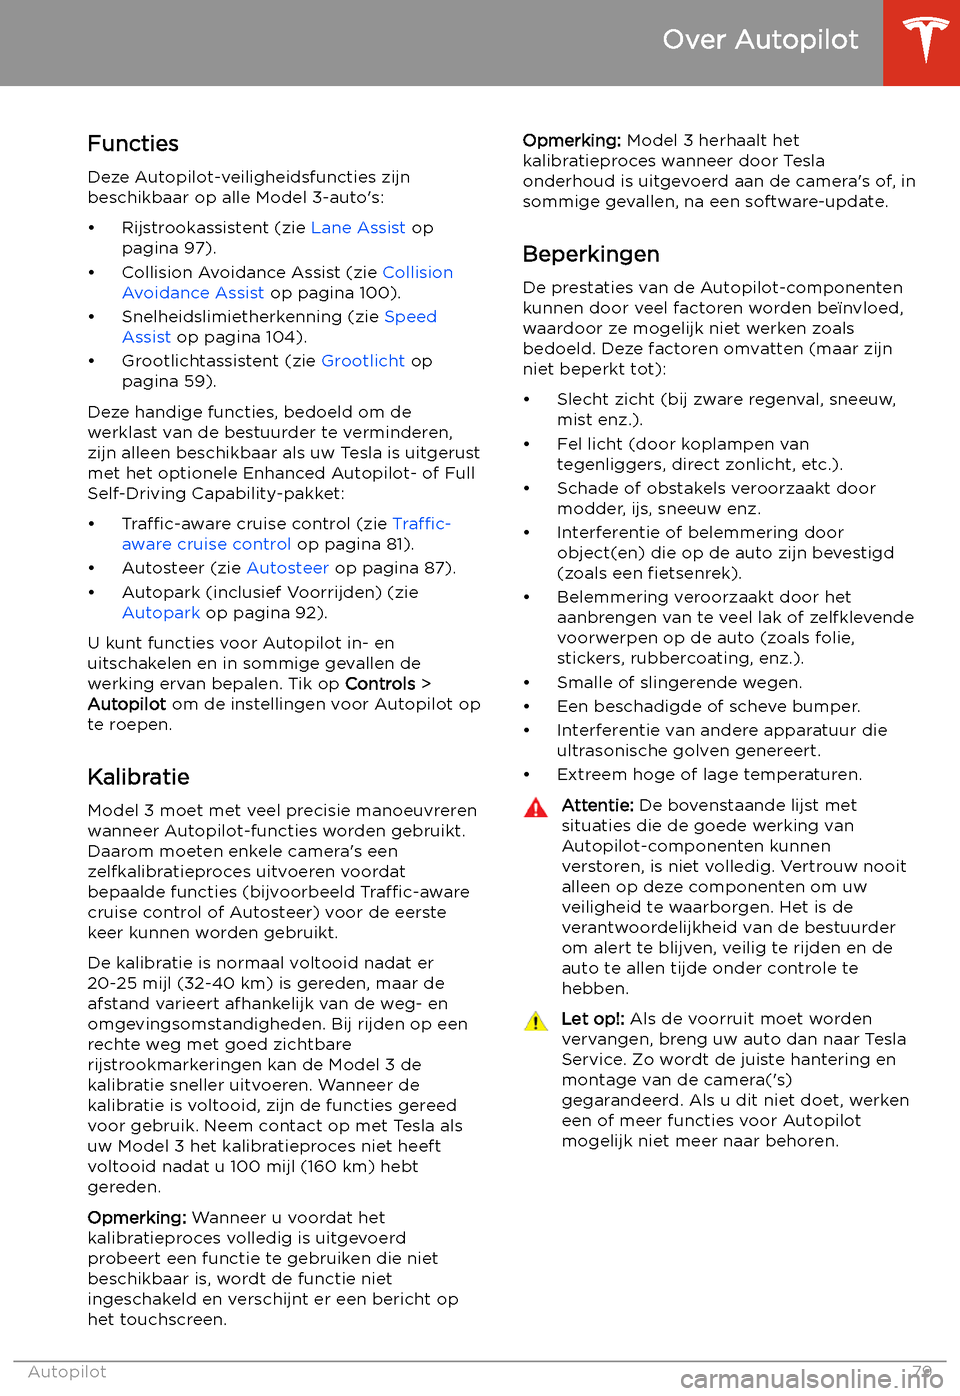 TESLA MODEL 3 2019  Handleiding (in Dutch) Functies
Deze Autopilot-veiligheidsfuncties zijn
beschikbaar op alle Model 3-auto